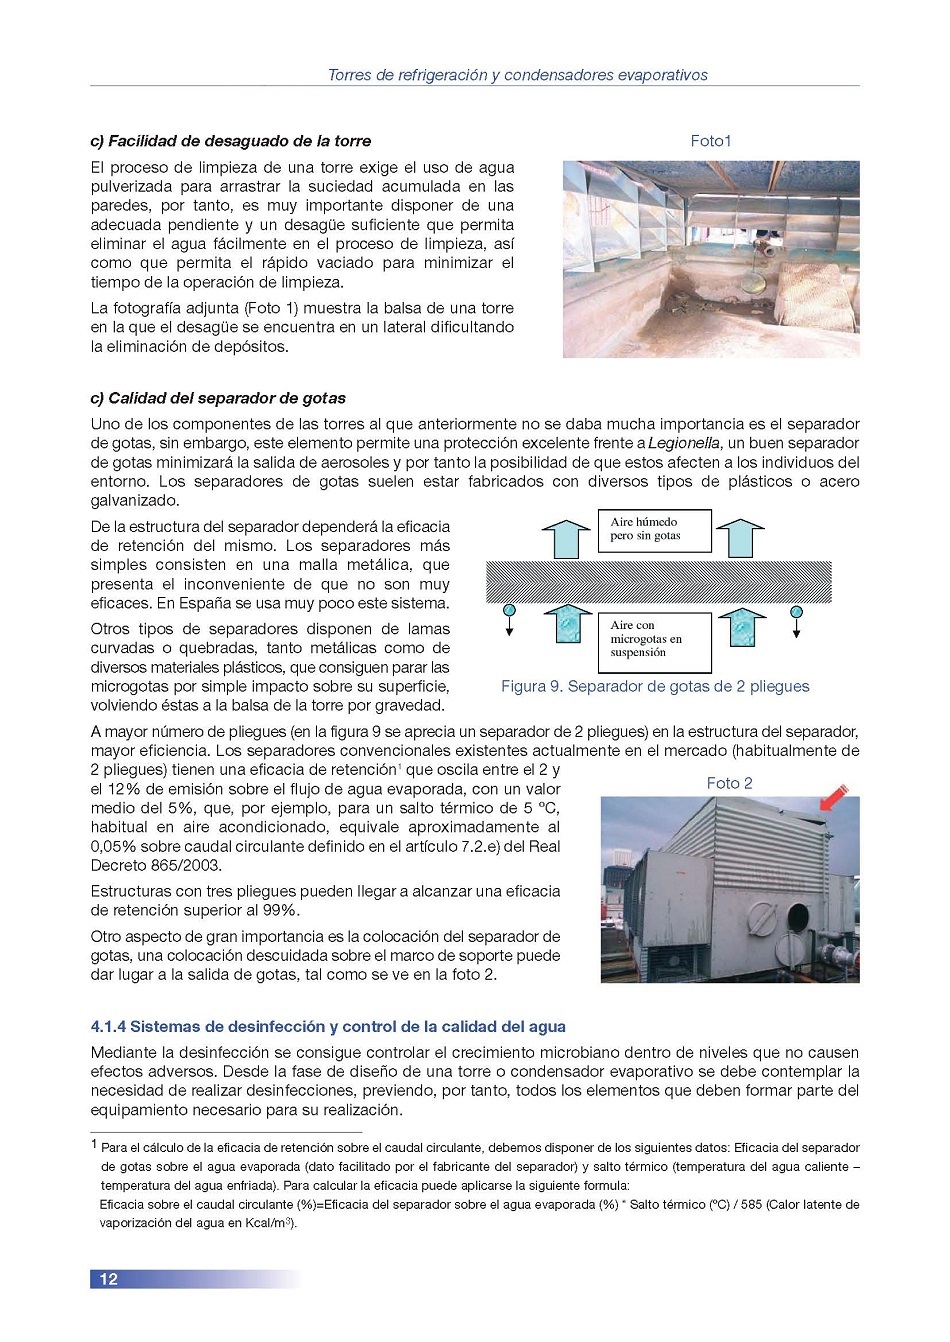 Torres de Refrigeración y Condensadores Evaporativos. Página 12